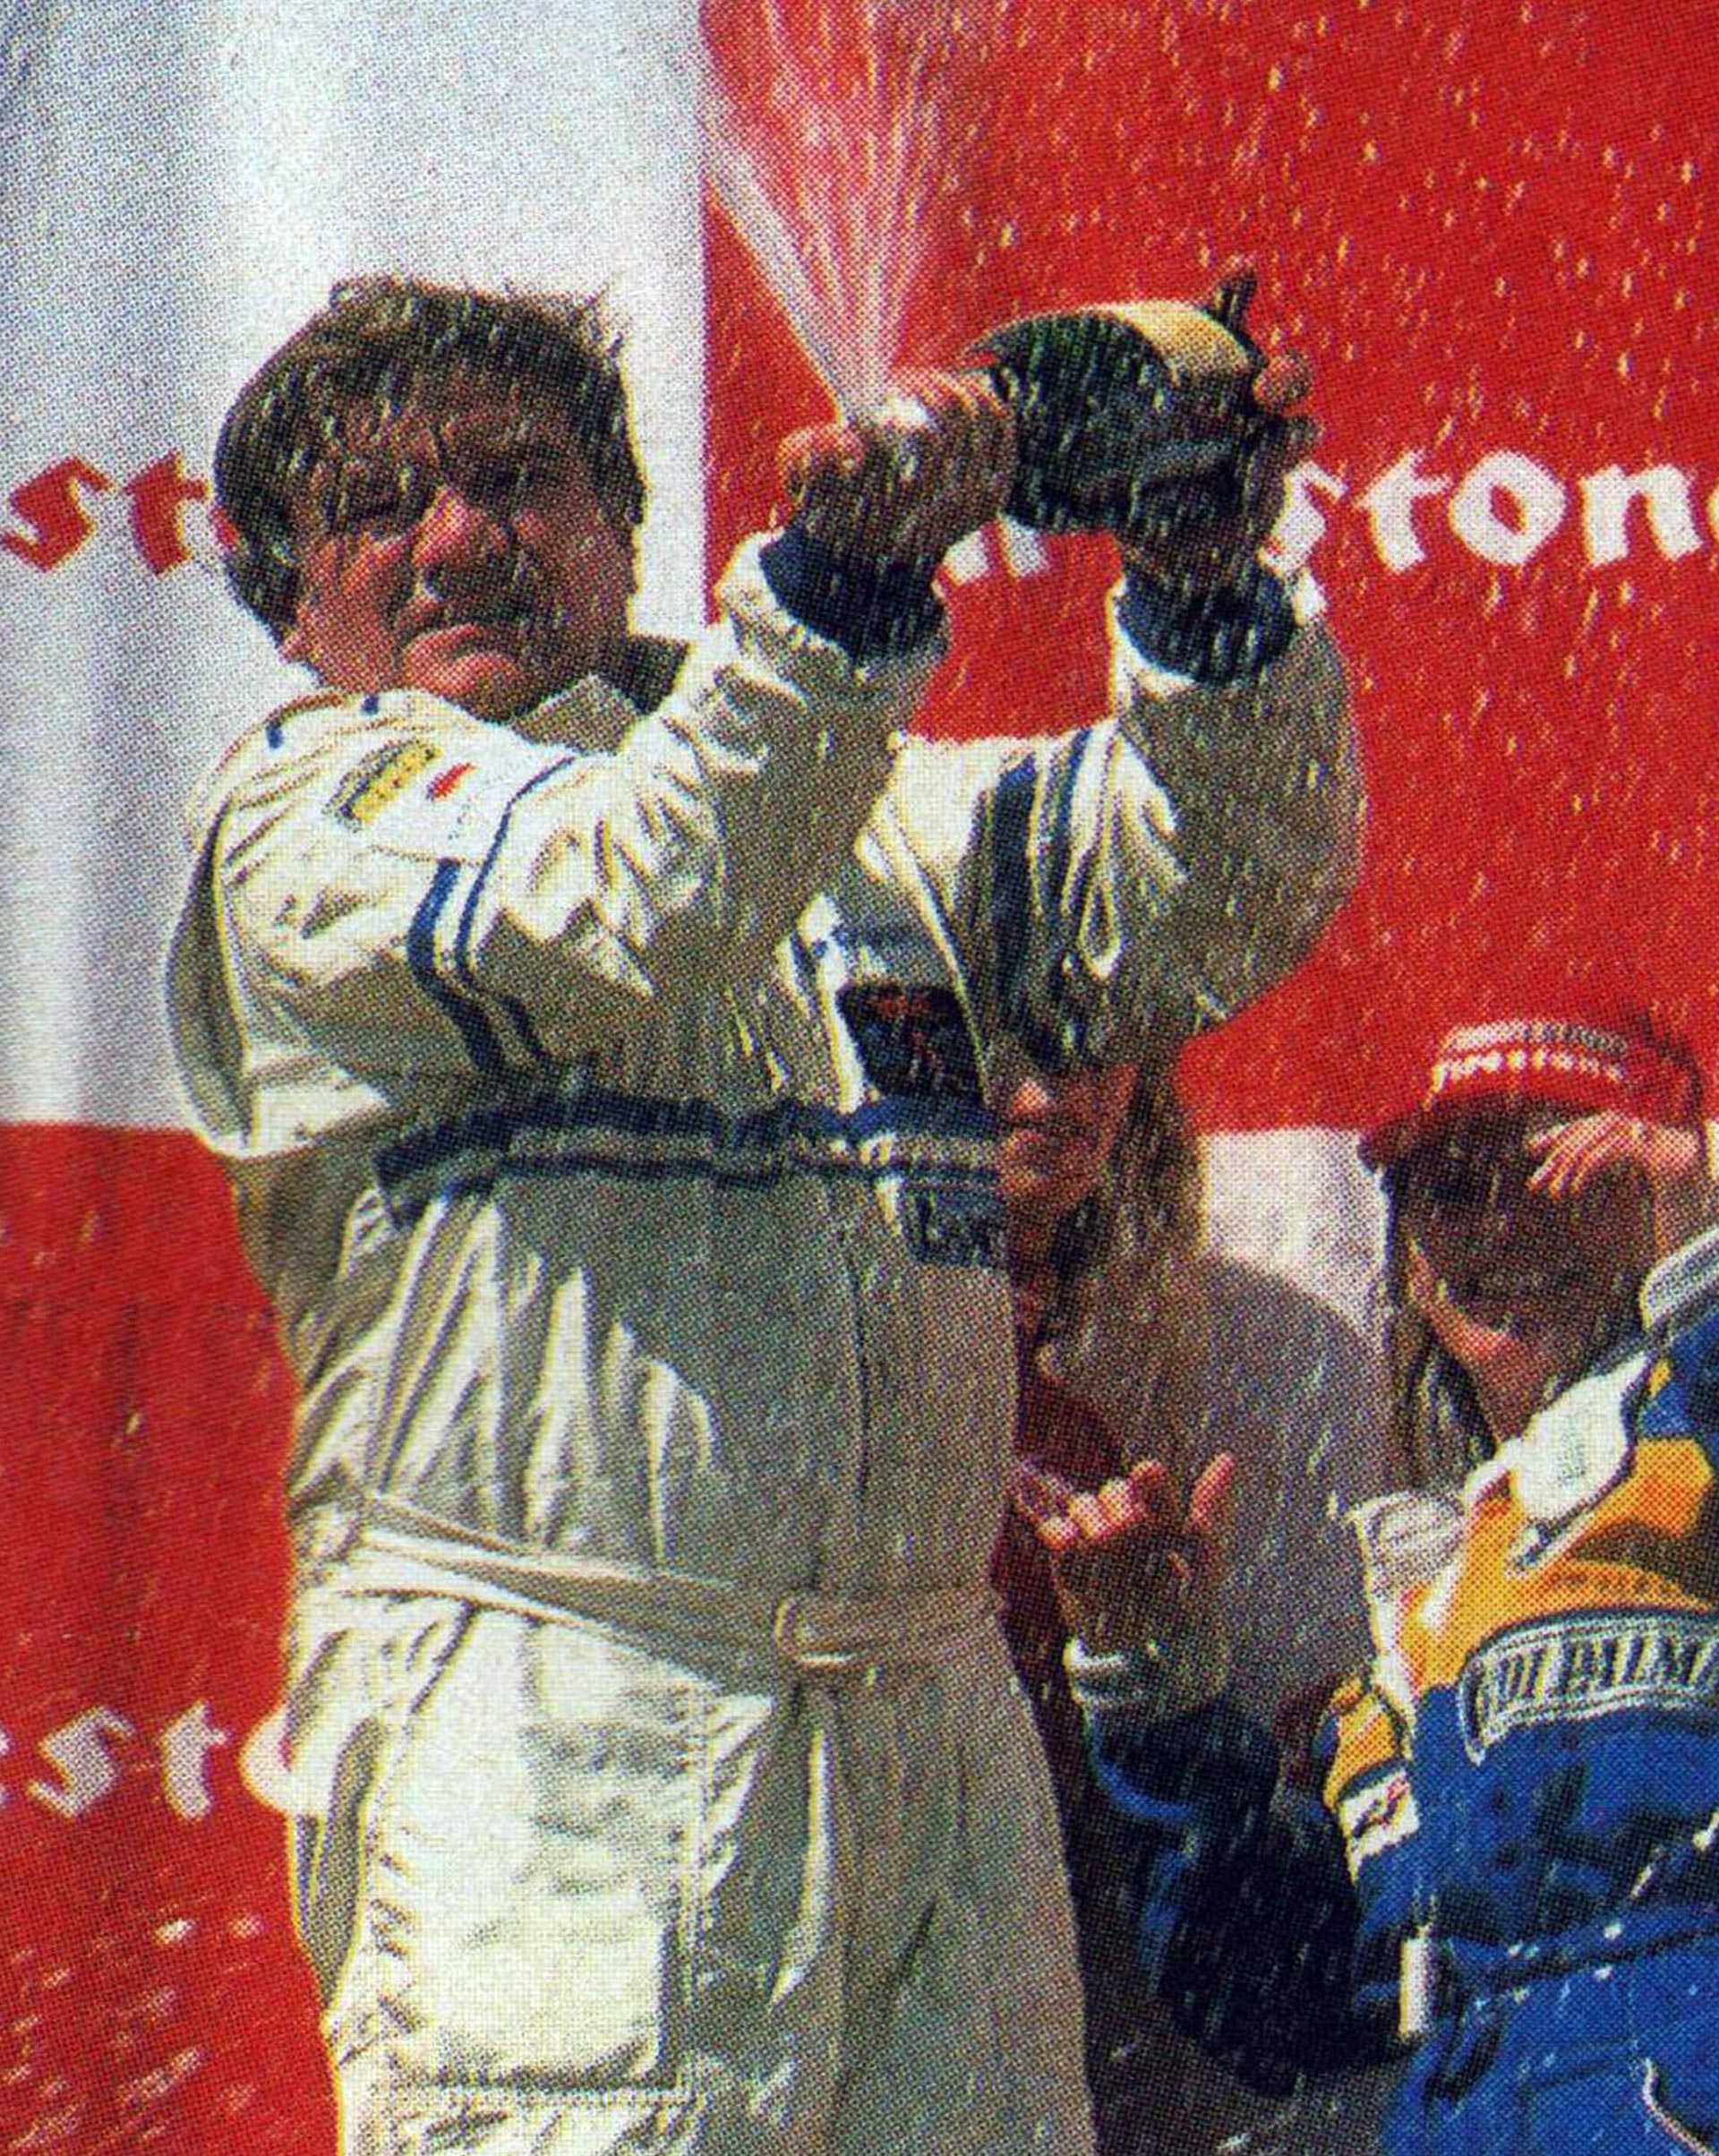 El Loco en el podio tras ganar su última carrera en TC. Fue en 1998, también en Buenos Aires, con su hija Andrea de acompañante (Archivo CORSA)